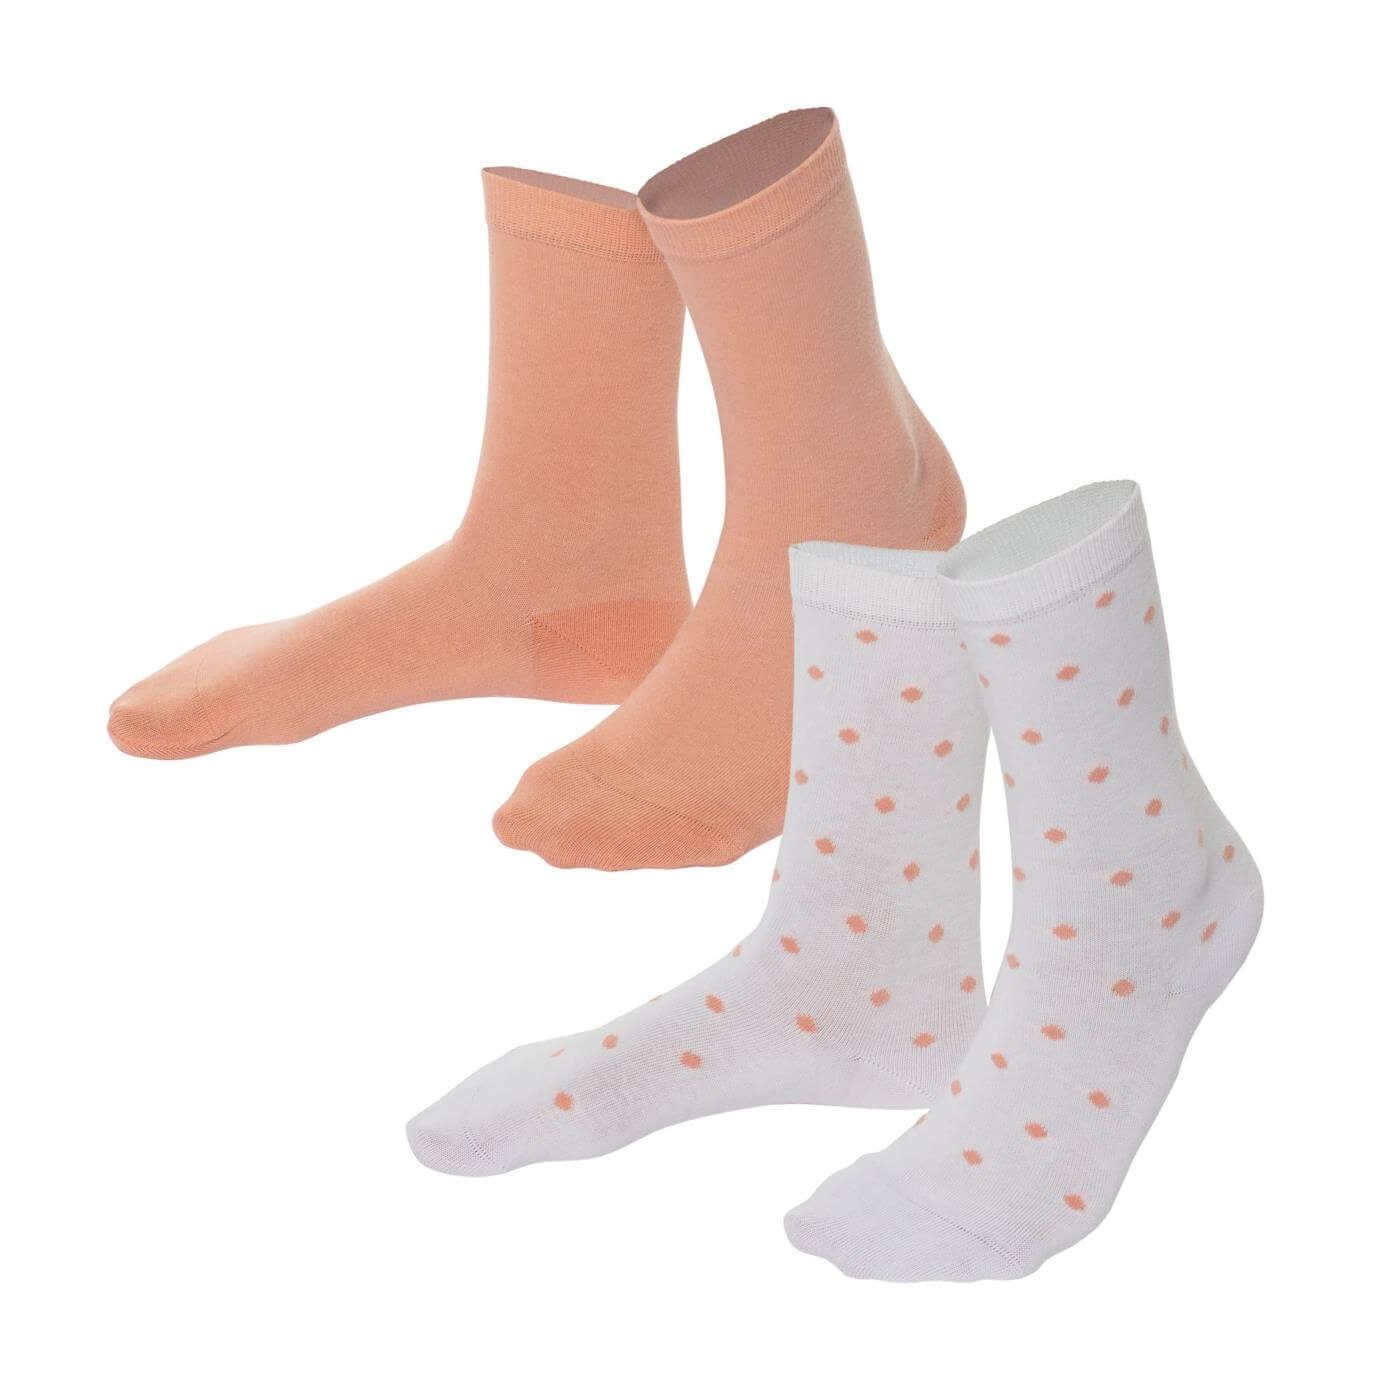 LIVING CRAFTS Socken BETTINA Einmal dezent gepunktet, einmal im passenden Uni-Ton